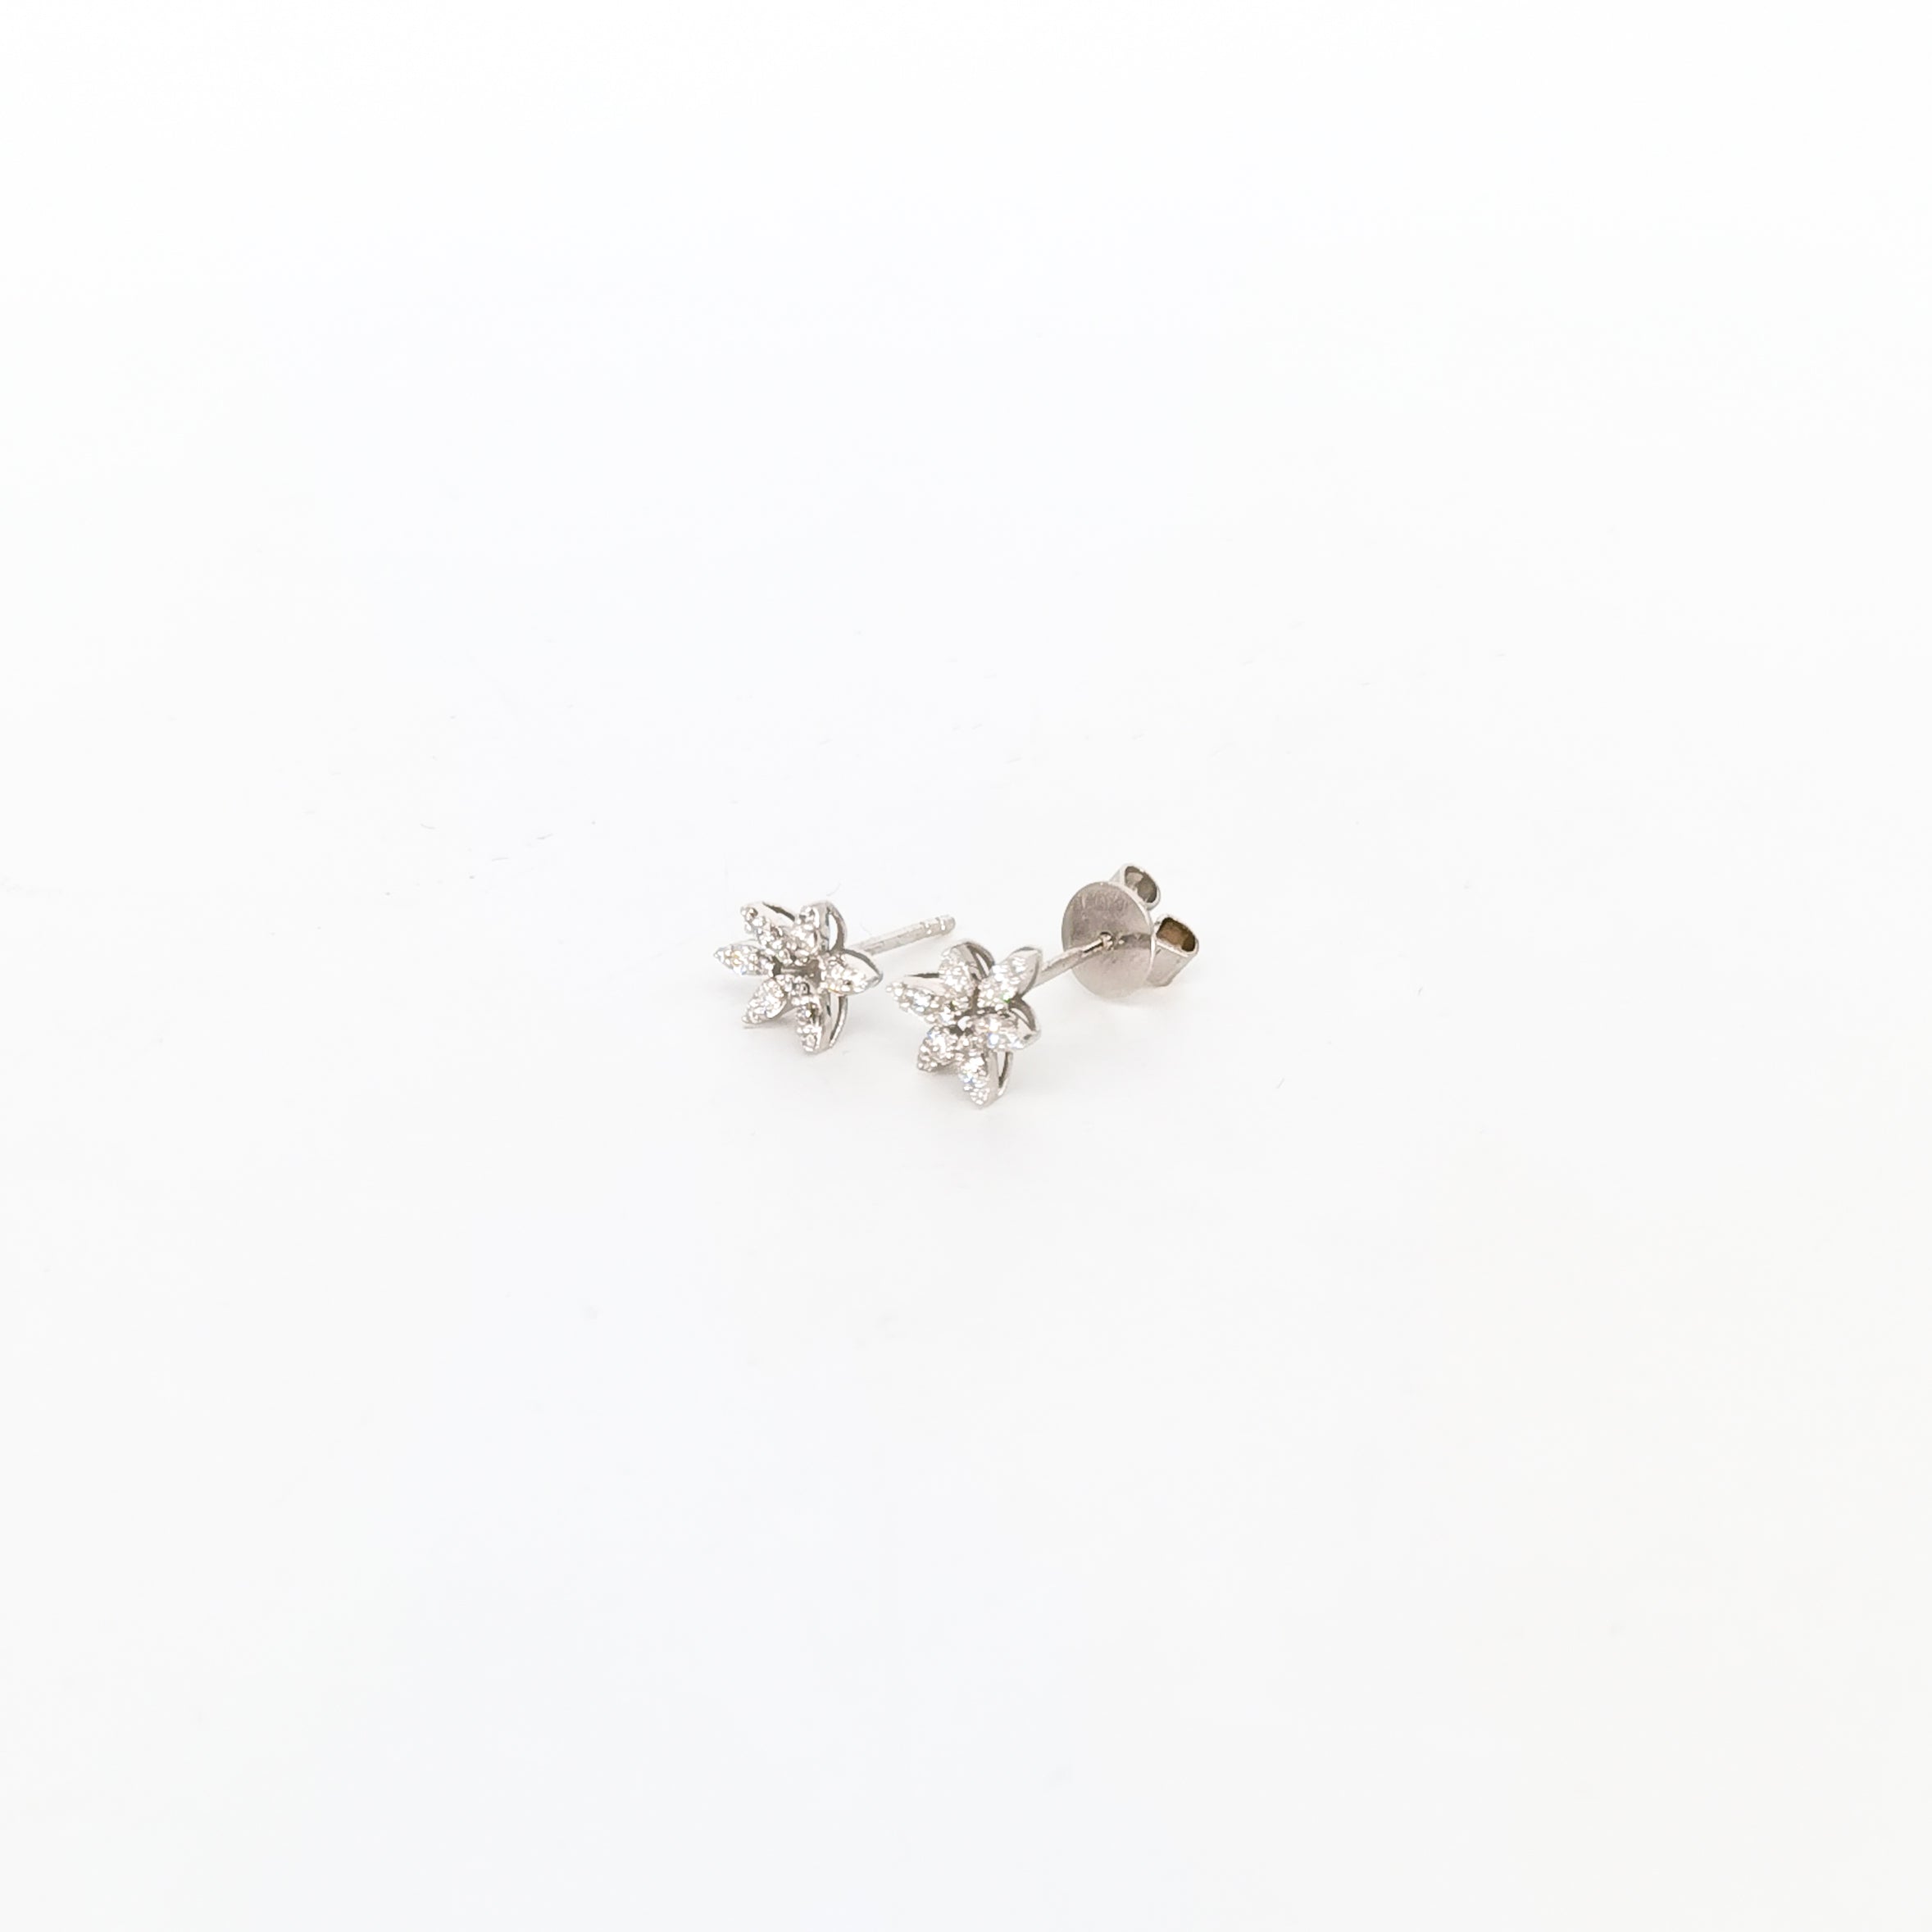 Flower earrings with diamonds